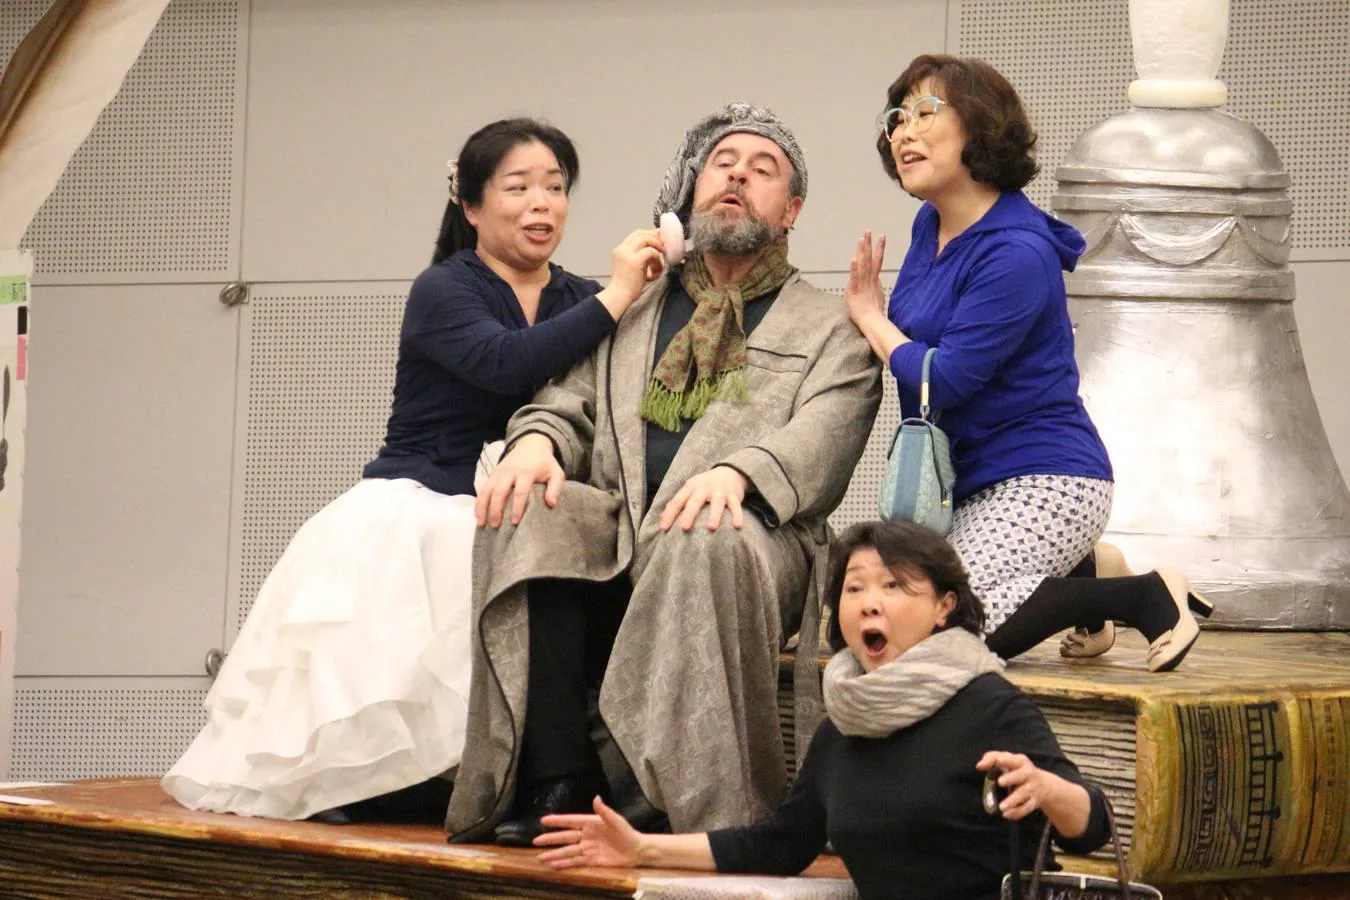 El barítono malagueño debuta como 'Gianni Schicchi' en el principal teatro de Japón. En su 30 aniversario en las tablas, vive una «segunda juventud» con nuevos retos interpretativos